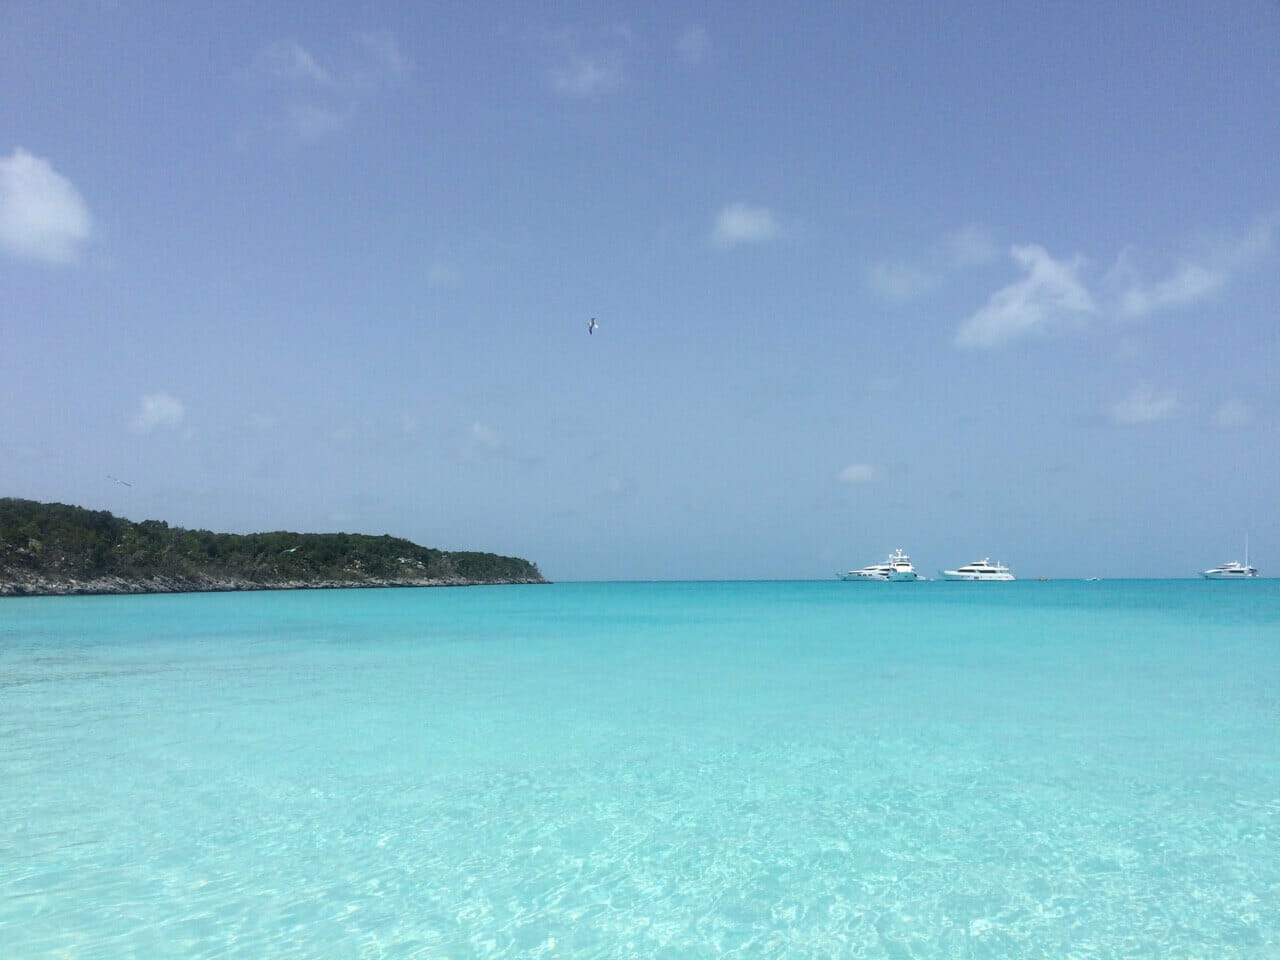 El agua azul zafiro cristalina de la isla de Exuma, Bahamas